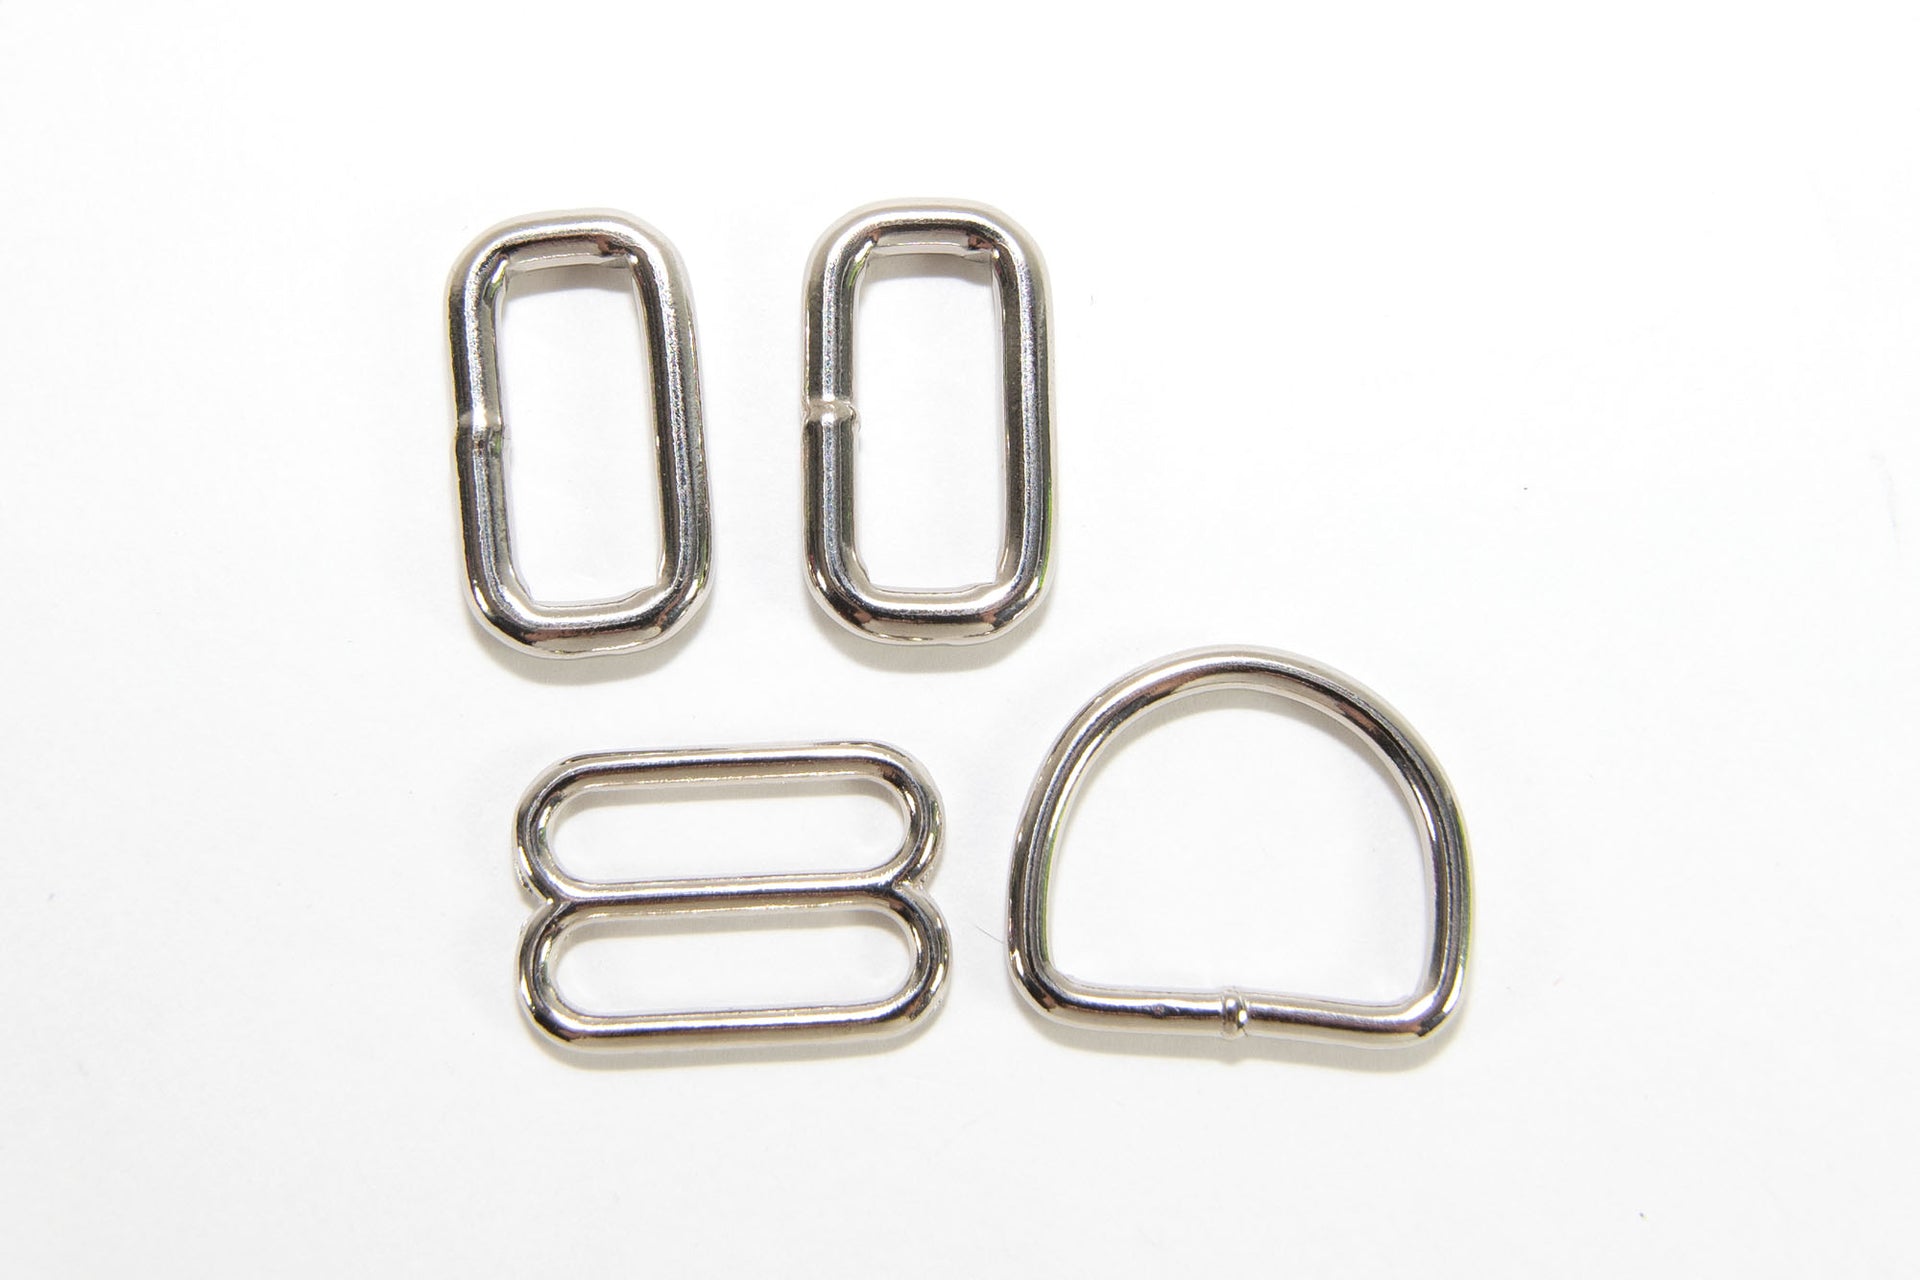 Welded D-Rings in Nickel Plated Steel - Wholesale Options